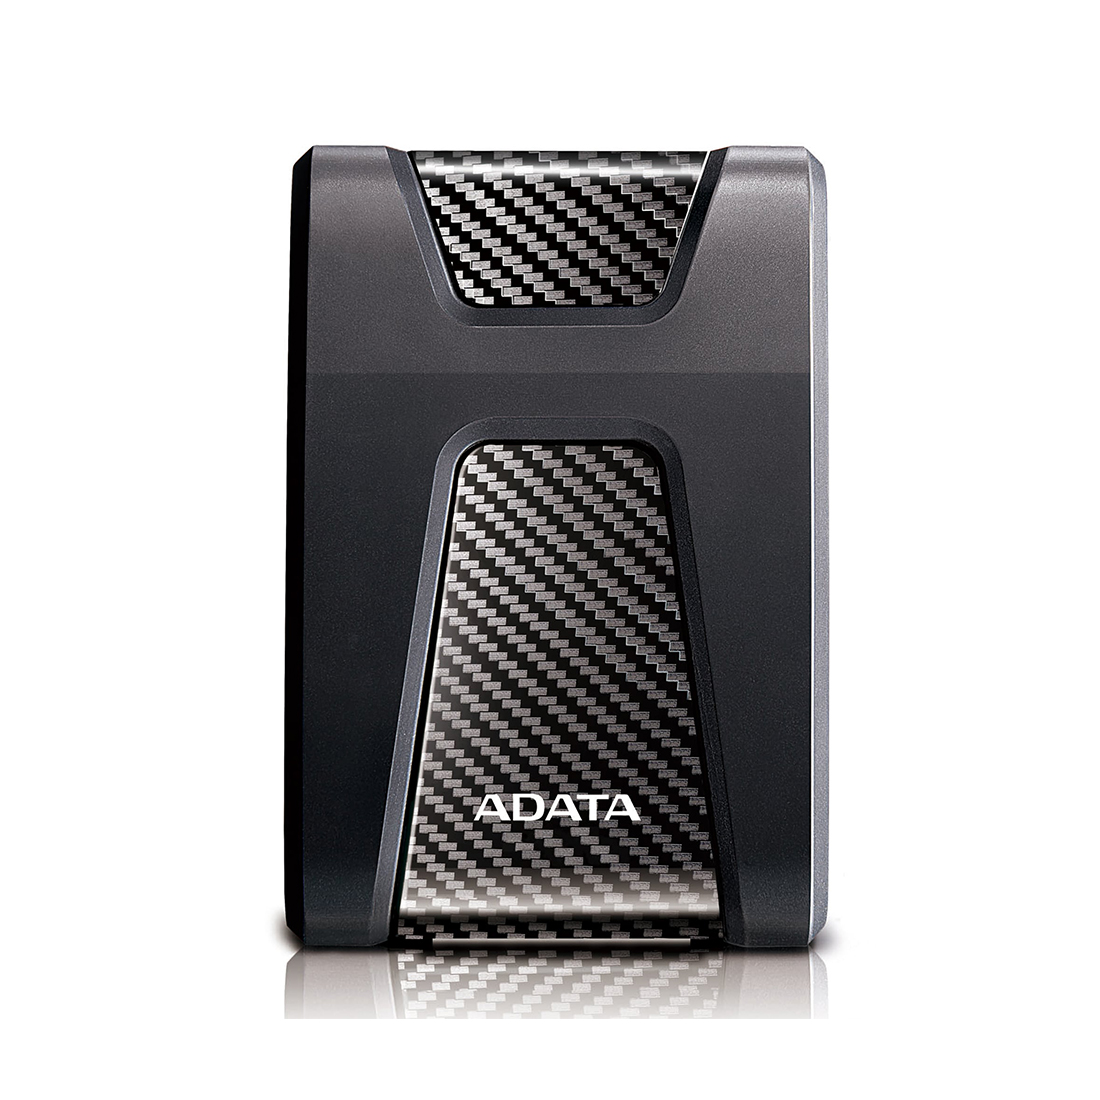 картинка Внешний жесткий диск ADATA HD650 2TB Чёрный от магазина itmag.kz